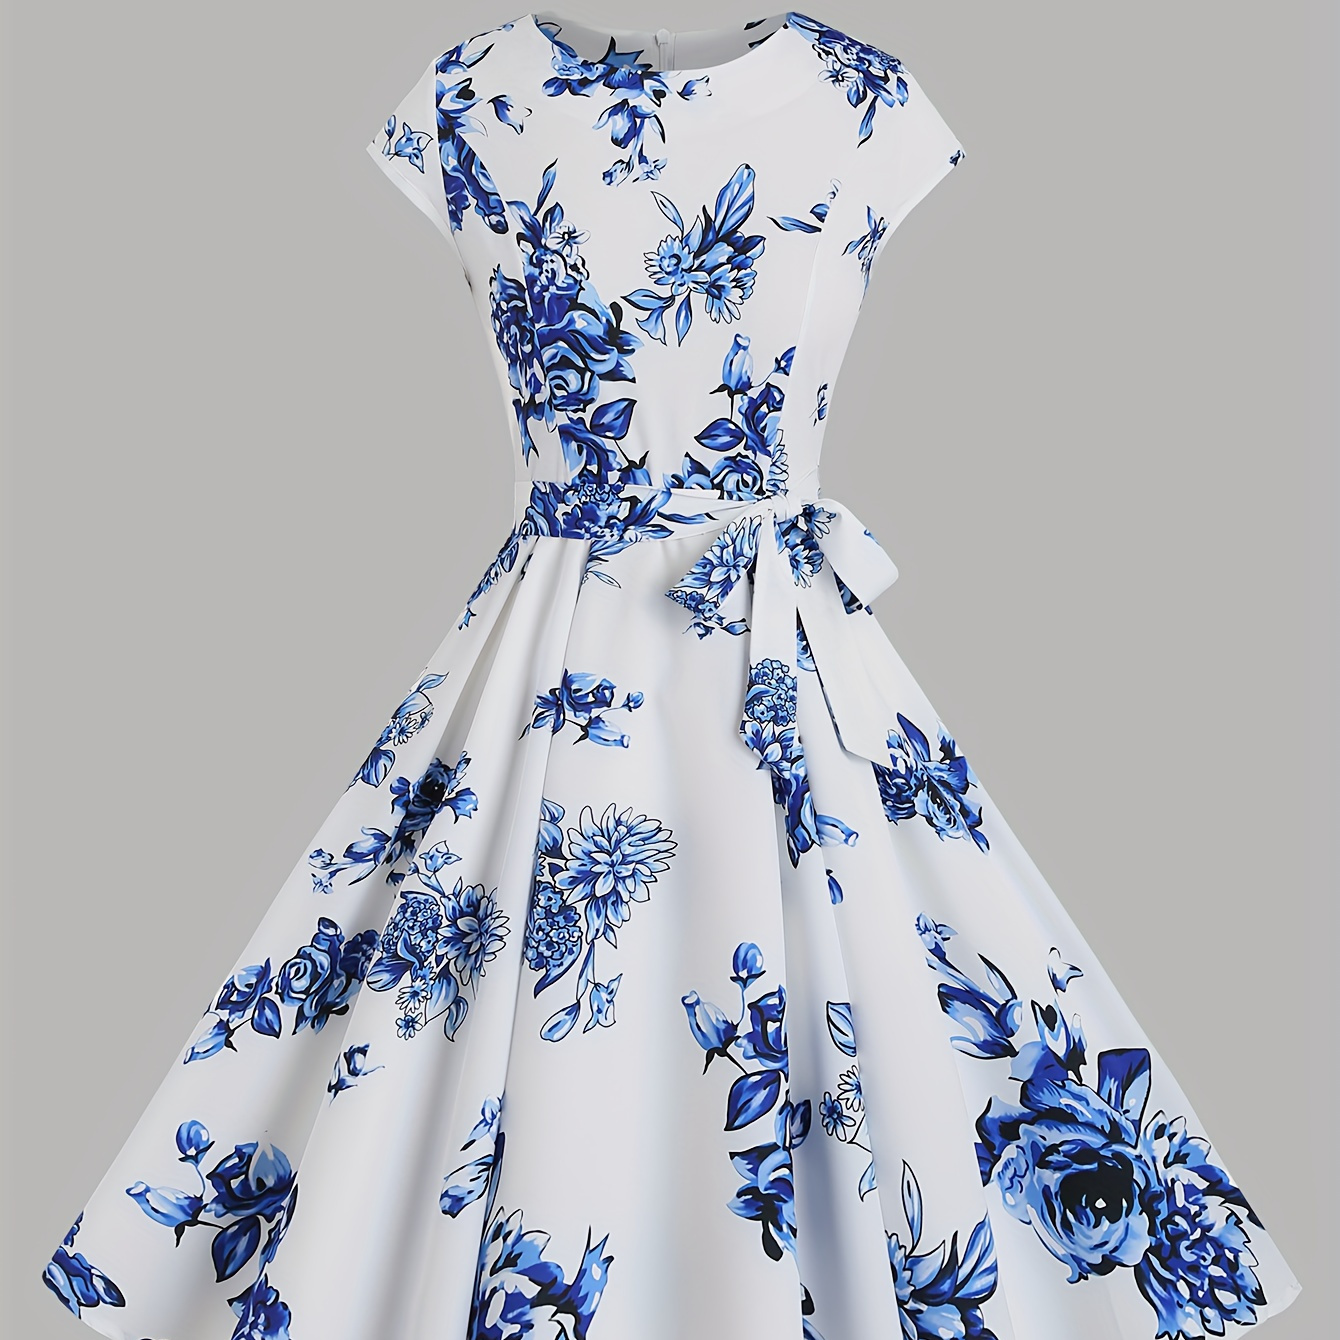 

Chinoiserie Floral Print Dress, Elegant Crew Neck Short Sleeve Tie Waist Dress For Spring & Summer, Women's Clothing For Elegant Dressing